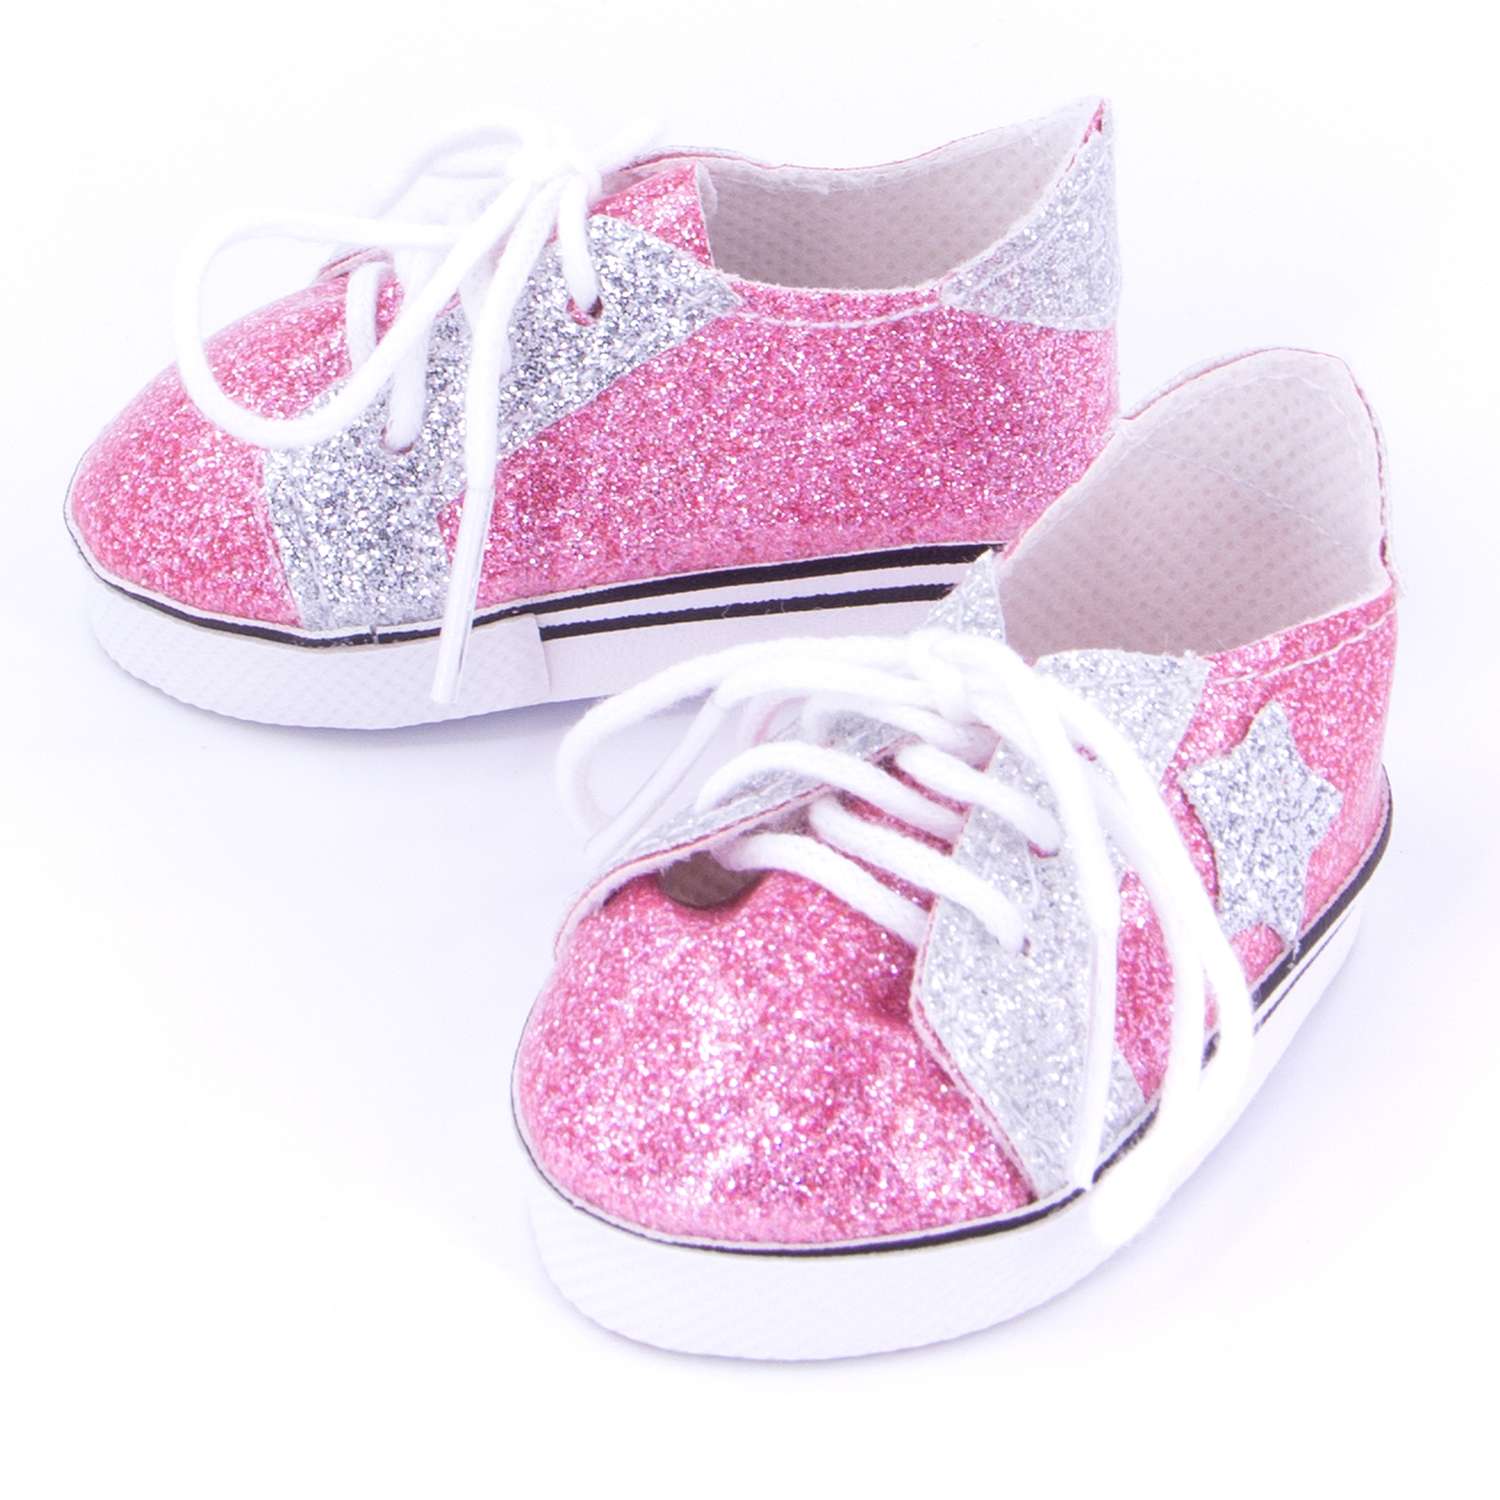 Обувь Модница для пупса 43-48 см 6150 розовый-серебро 6150розовый-серебро - фото 1